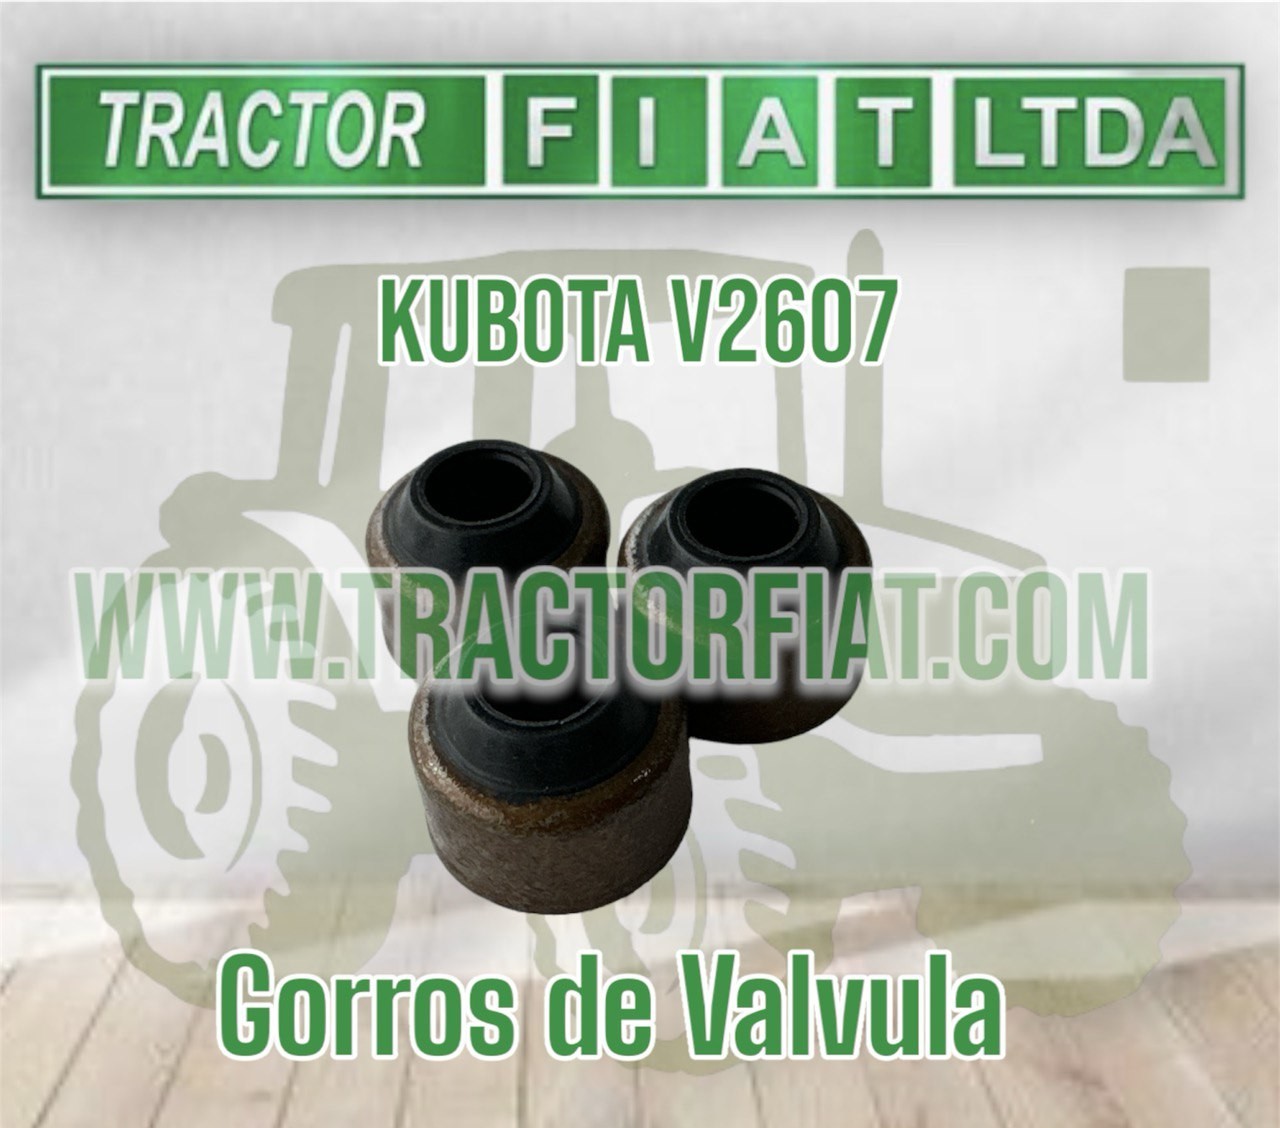 GORROS DE VALVULA - KUBOTA V2607